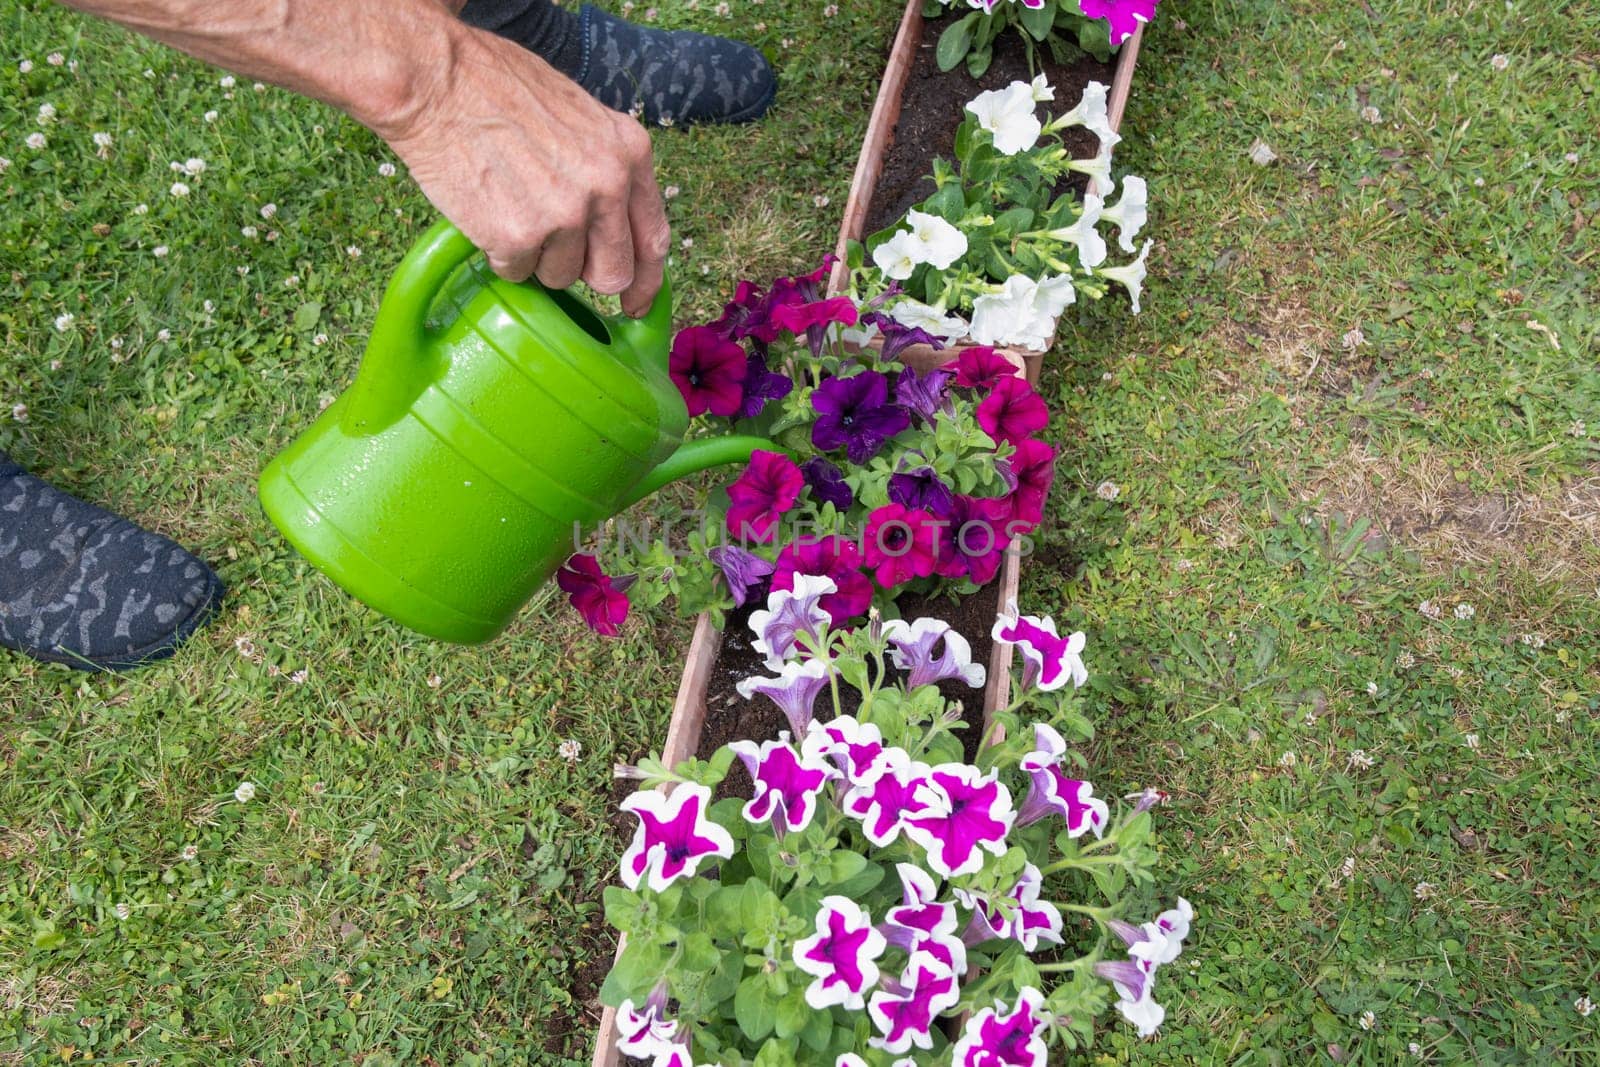 gardener watering transplanted petunias from watering can, seasonal garden work by KaterinaDalemans